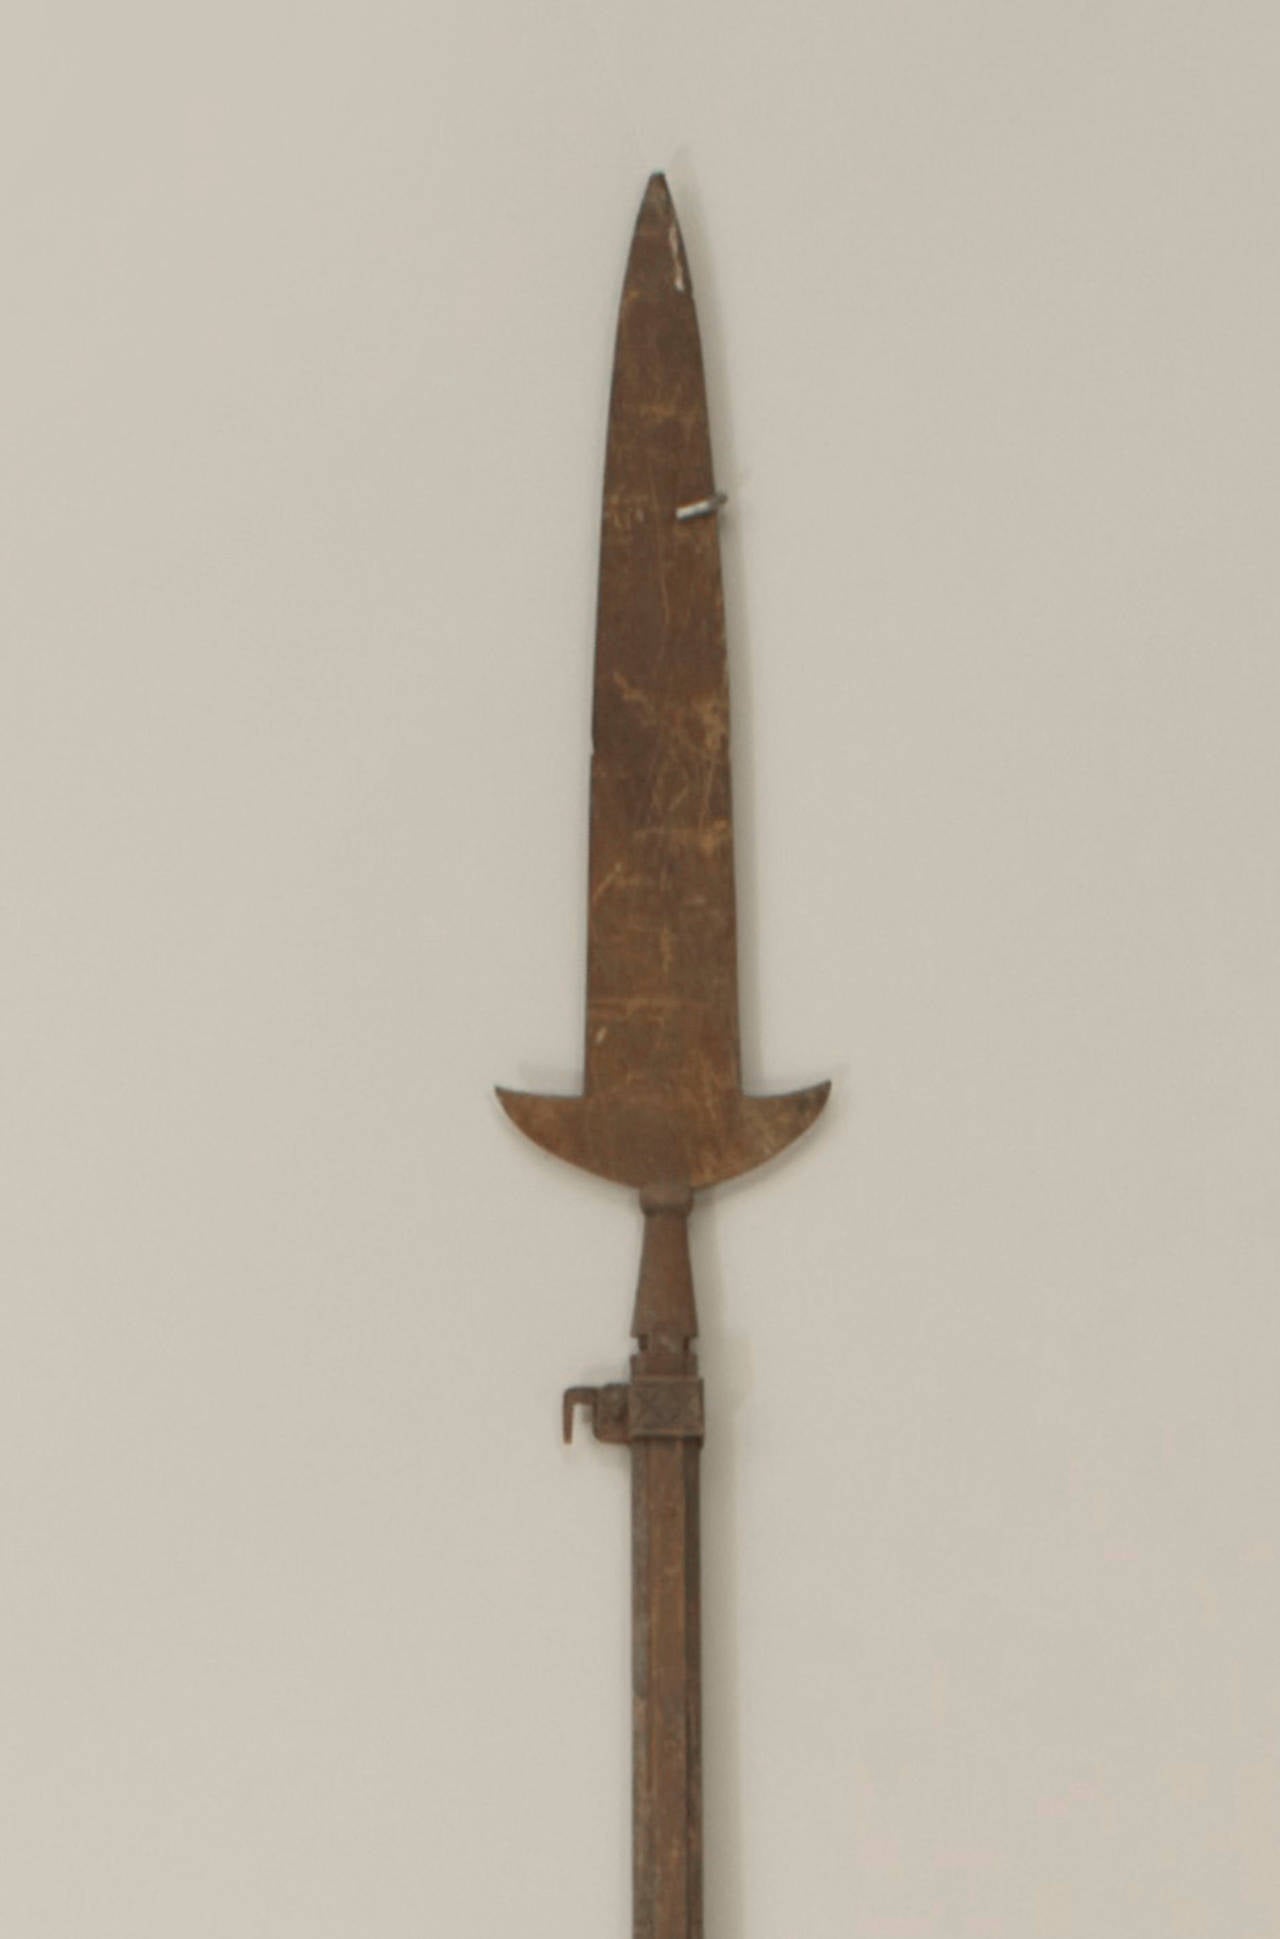 Lance de style Renaissance anglaise avec un simple manche en bois et une lame en fer de 32 pouces.
